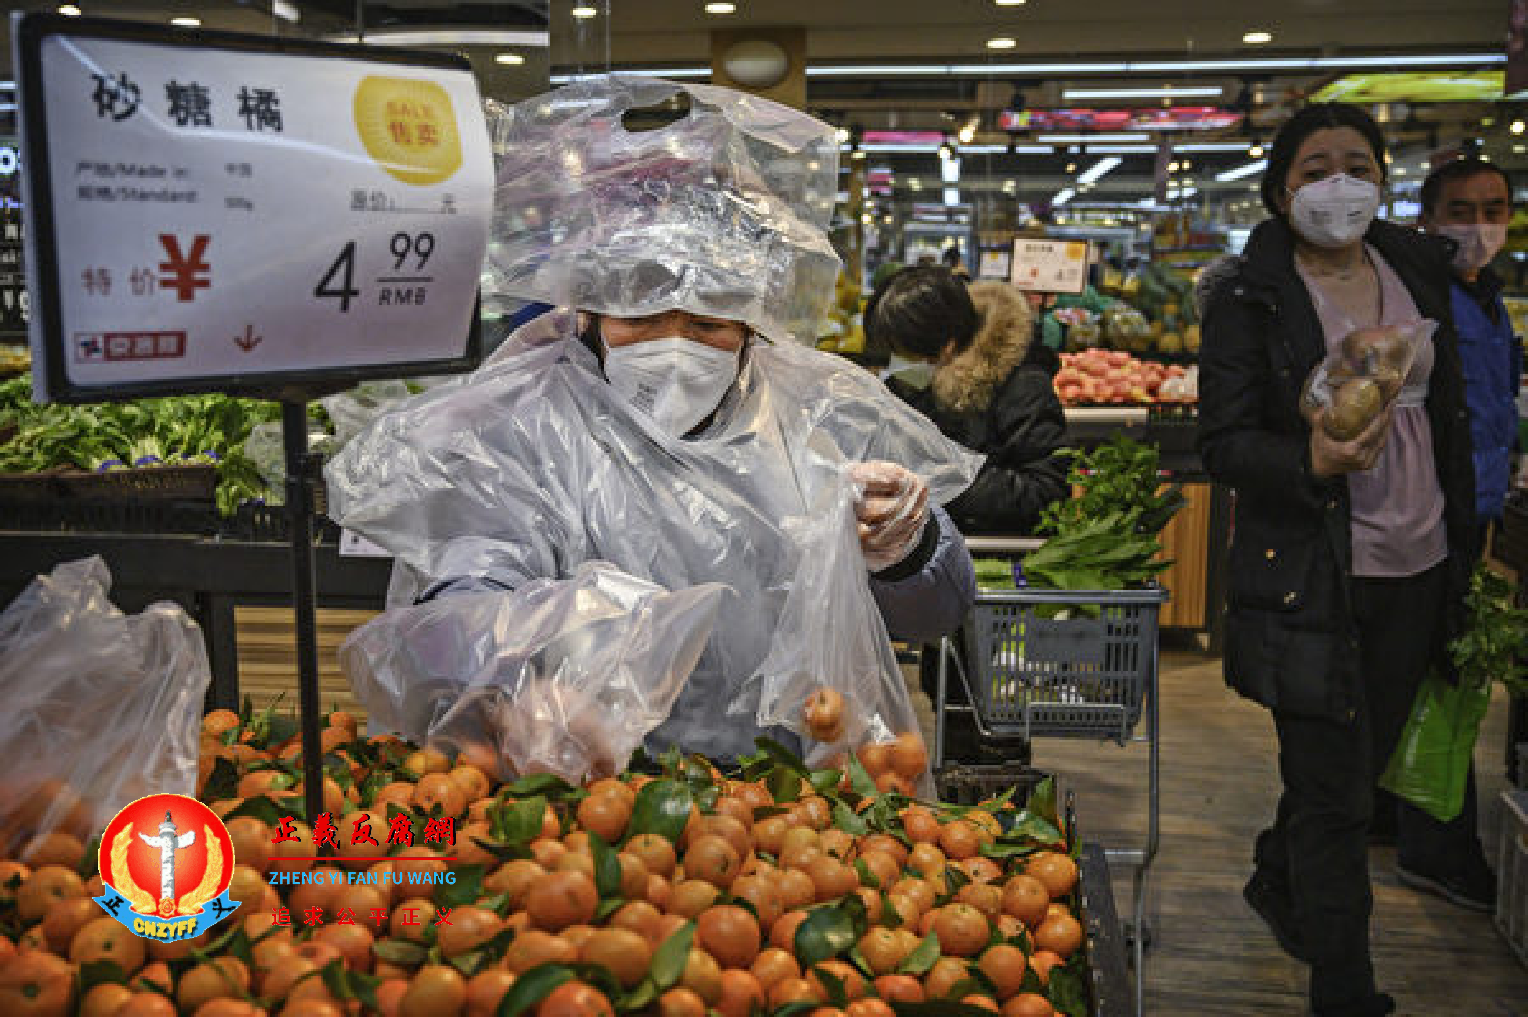 2020年2月11日，一名妇女戴着防护面具在北京的一家超市购物。此时武汉疫情已蔓延至全国。.png